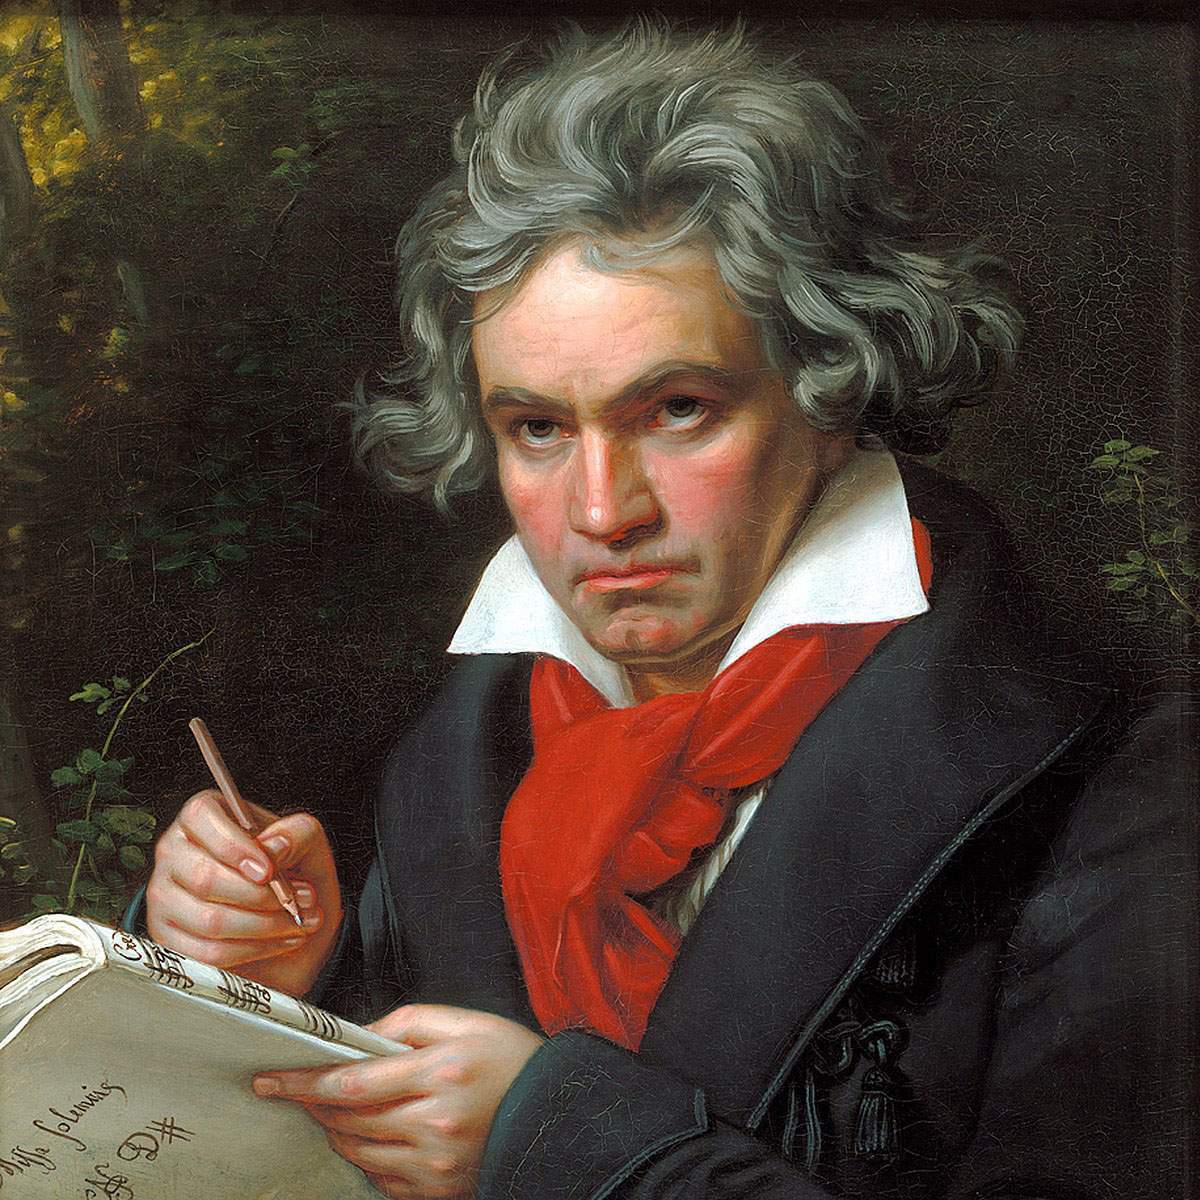 1200x1200_Beethoven